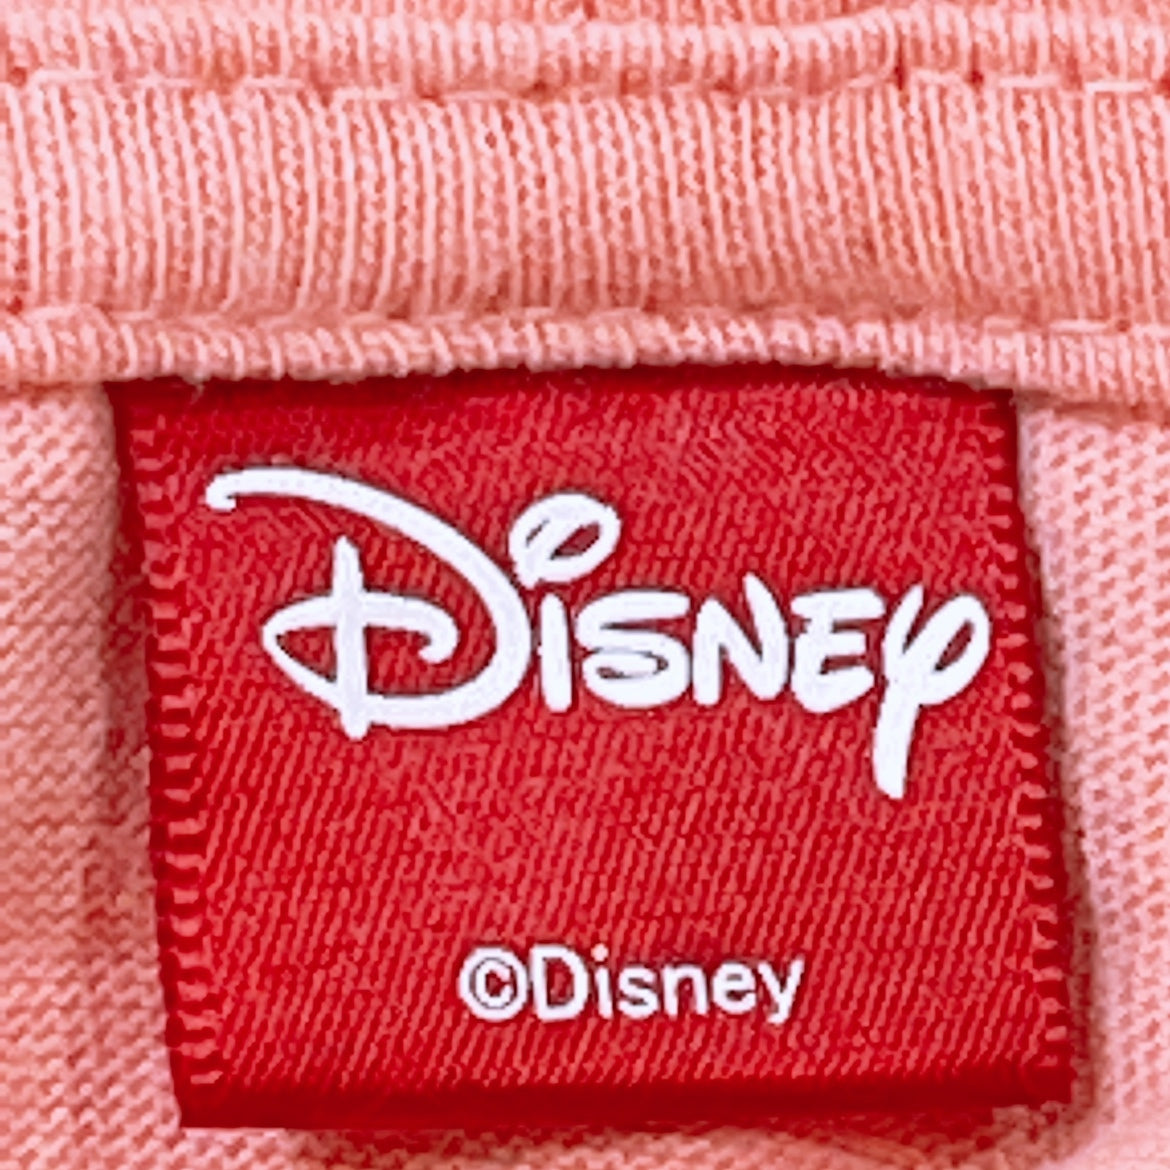 レディースL Disney 袖なし Tシャツ ピンク 赤 レッド フード付き ミッキーマウス かわいい ディズニー 【21371】